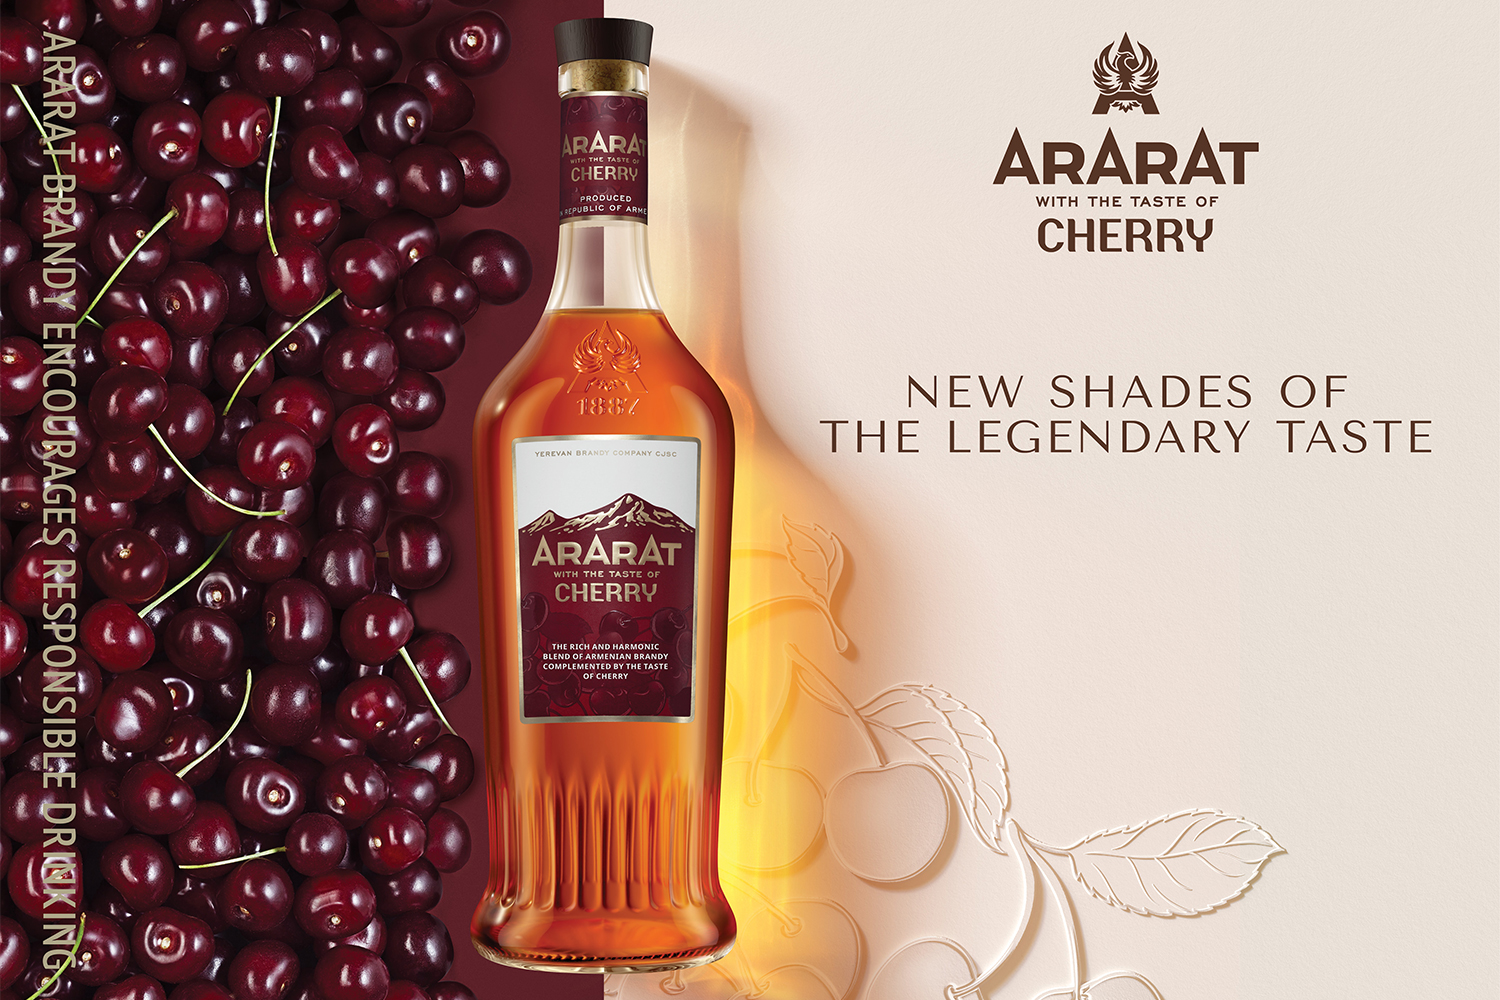 Երեւանի կոնյակի գործարանը թողարկել է ARARAT Cherry նոր խմիչքը